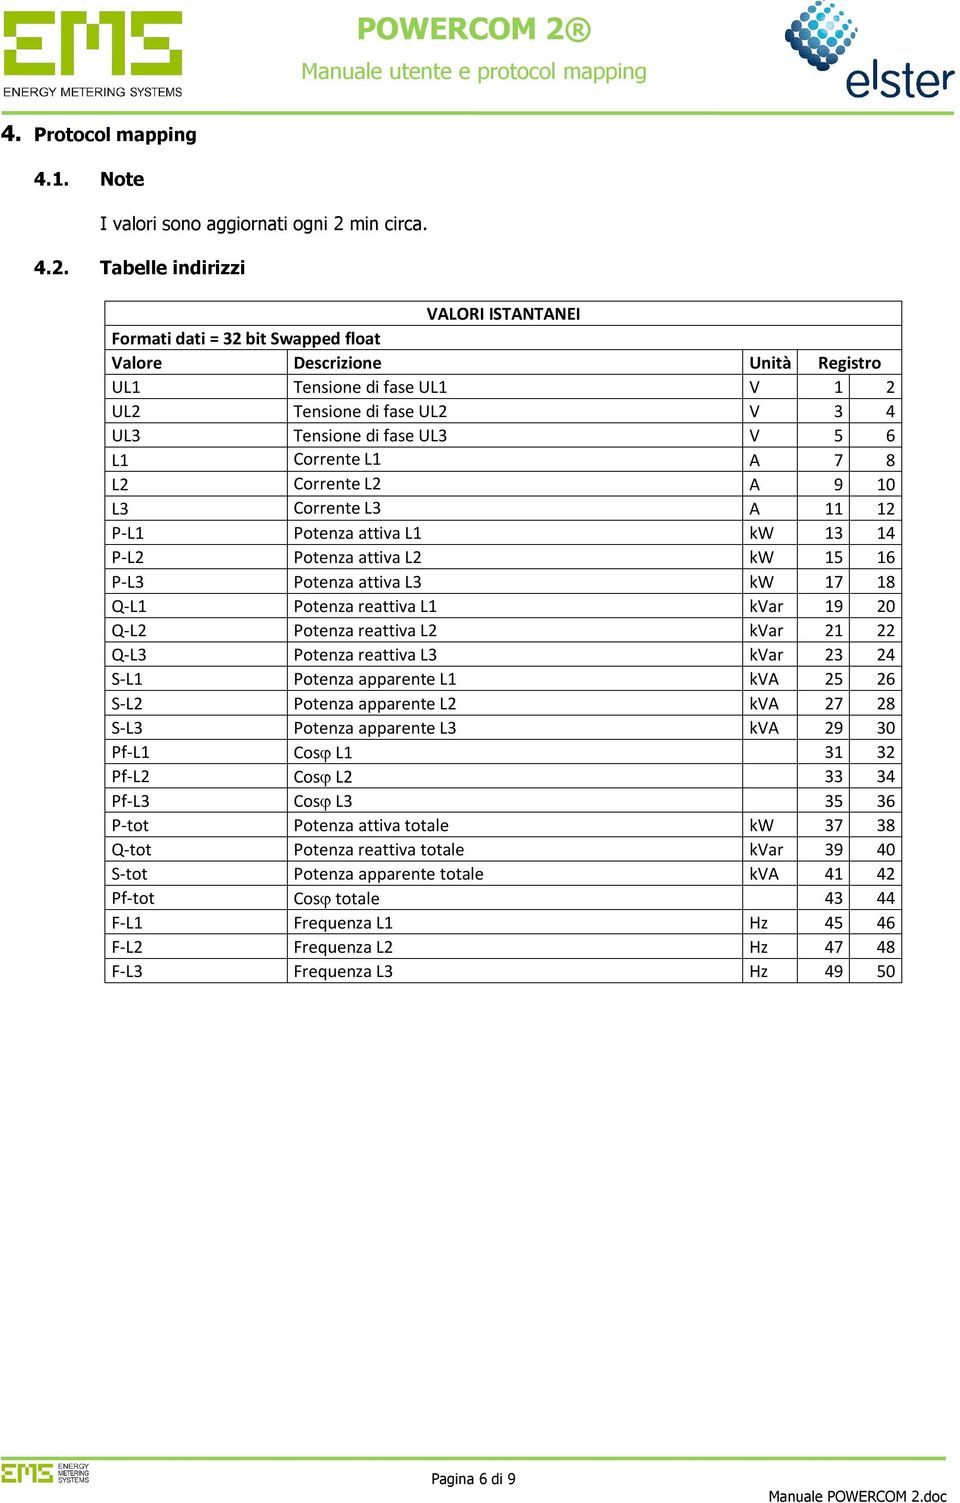 Tabelle indirizzi VALORI ISTANTANEI Formati dati = 32 bit Swapped float Valore Descrizione Unità Registro UL1 Tensione di fase UL1 V 1 2 UL2 Tensione di fase UL2 V 3 4 UL3 Tensione di fase UL3 V 5 6